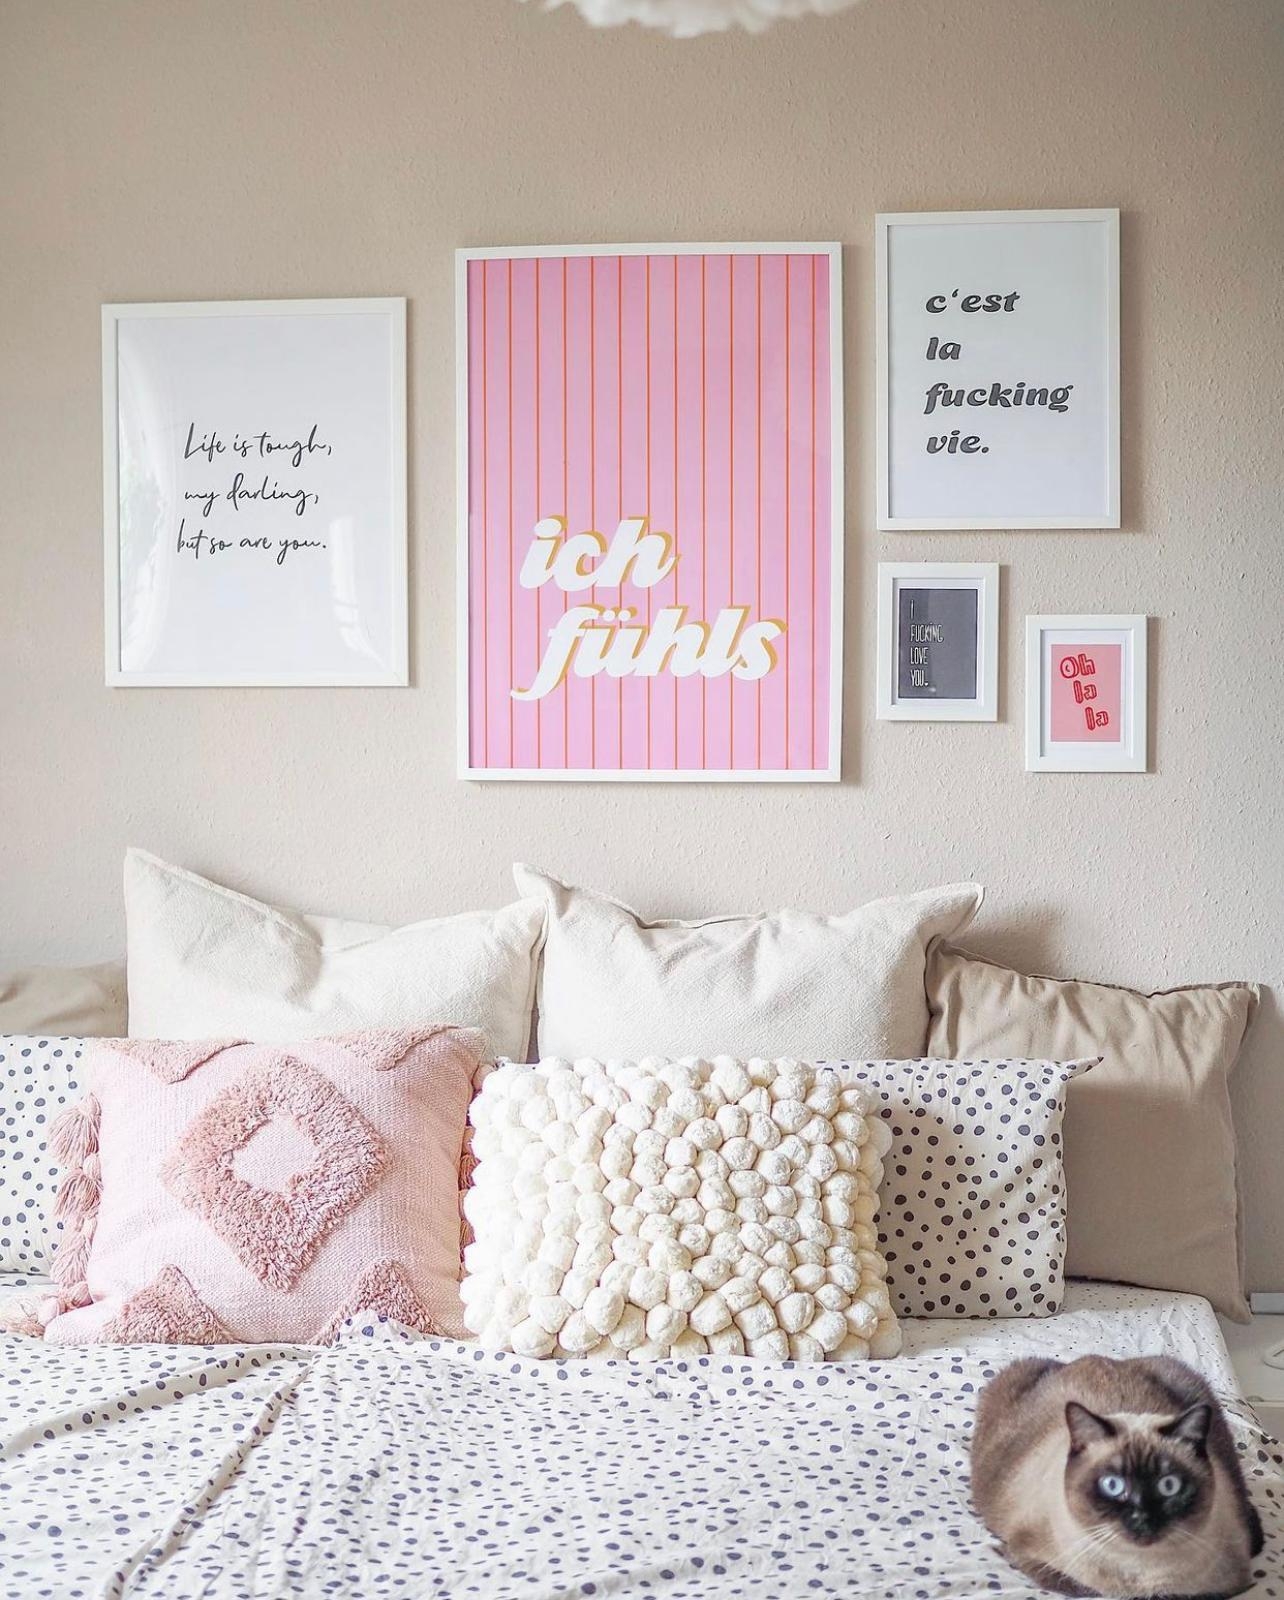 Ich fühls! 💖😁
#gallerywall #poster #pinklove #bilderwand #schlafzimmer #bedroom #rosaliebe #pink